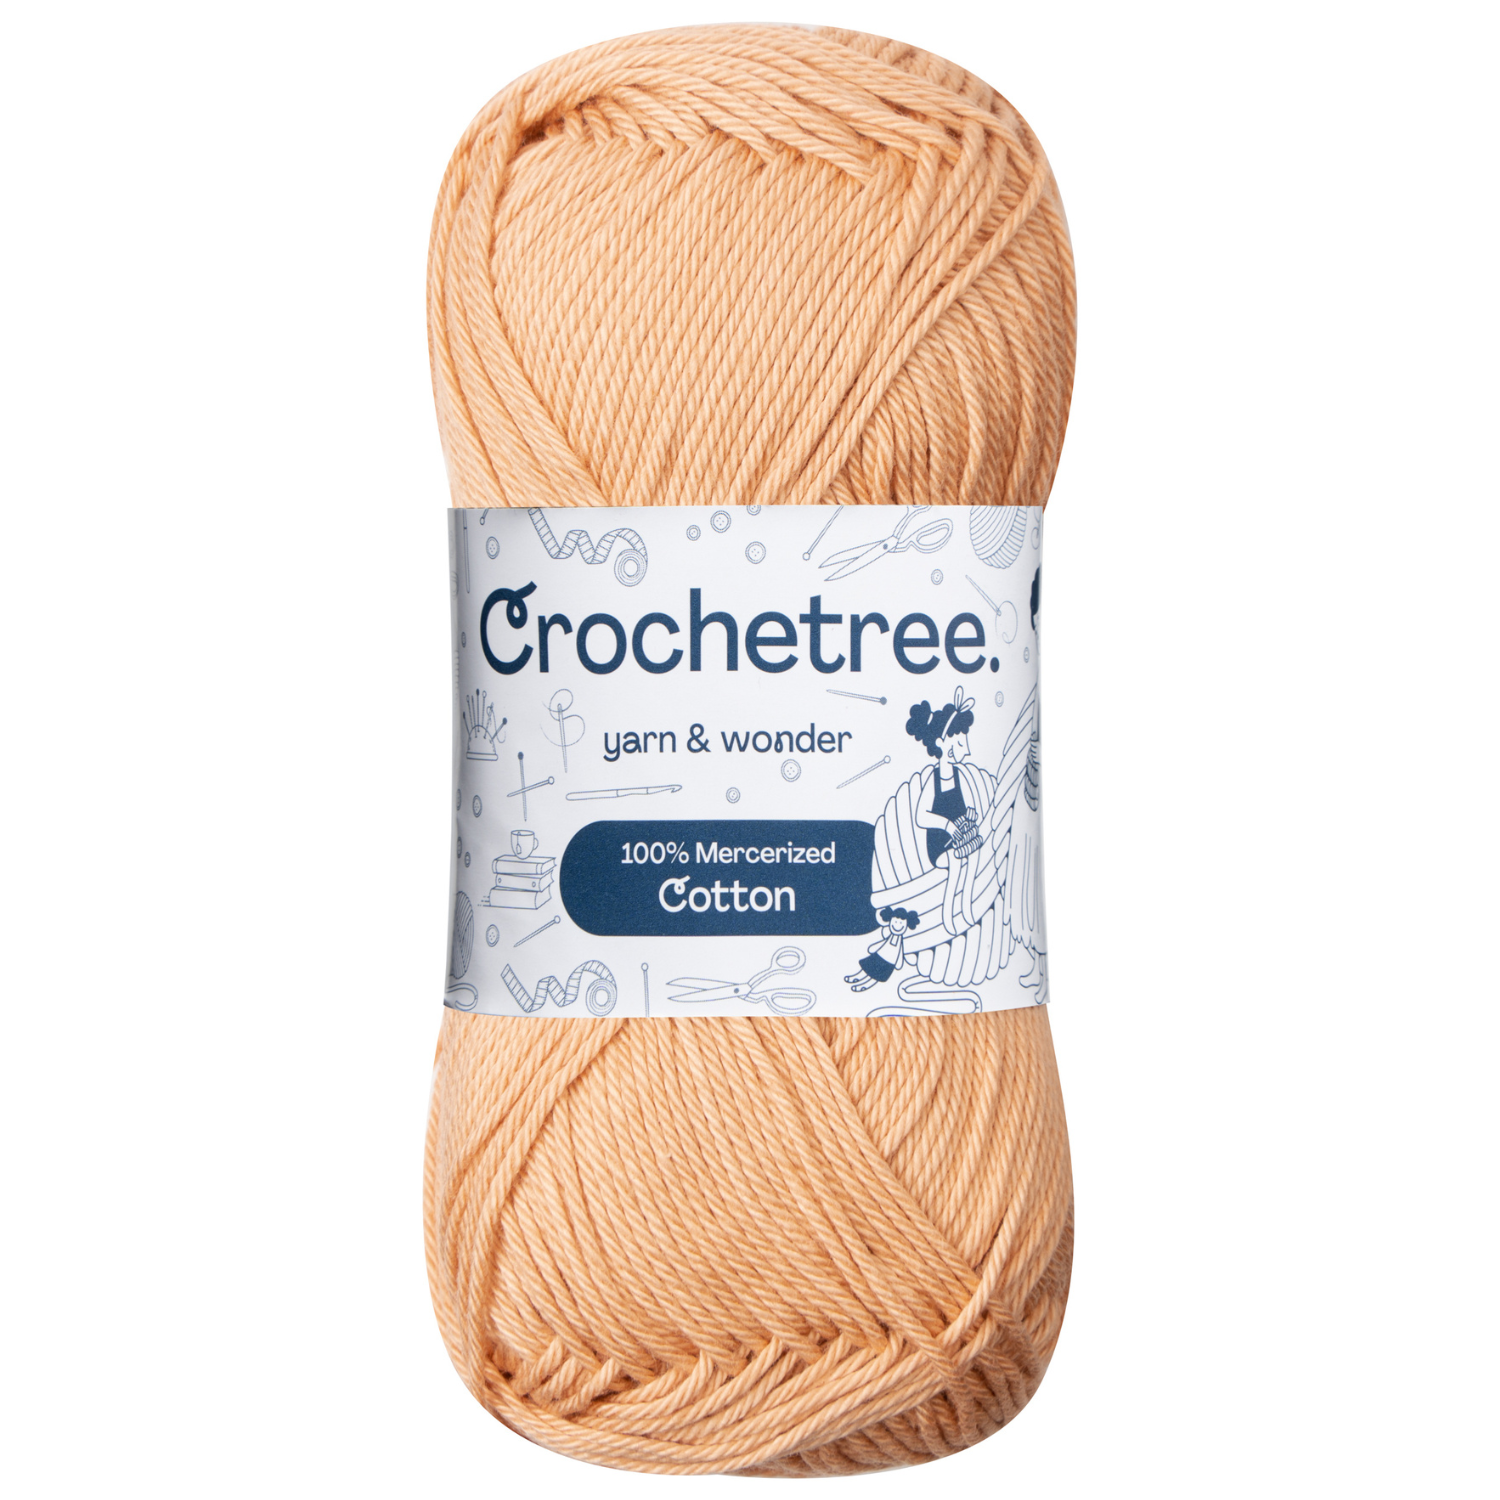  Pllieay Red Cotton Yarn, 4x50g Crochet Yarn for